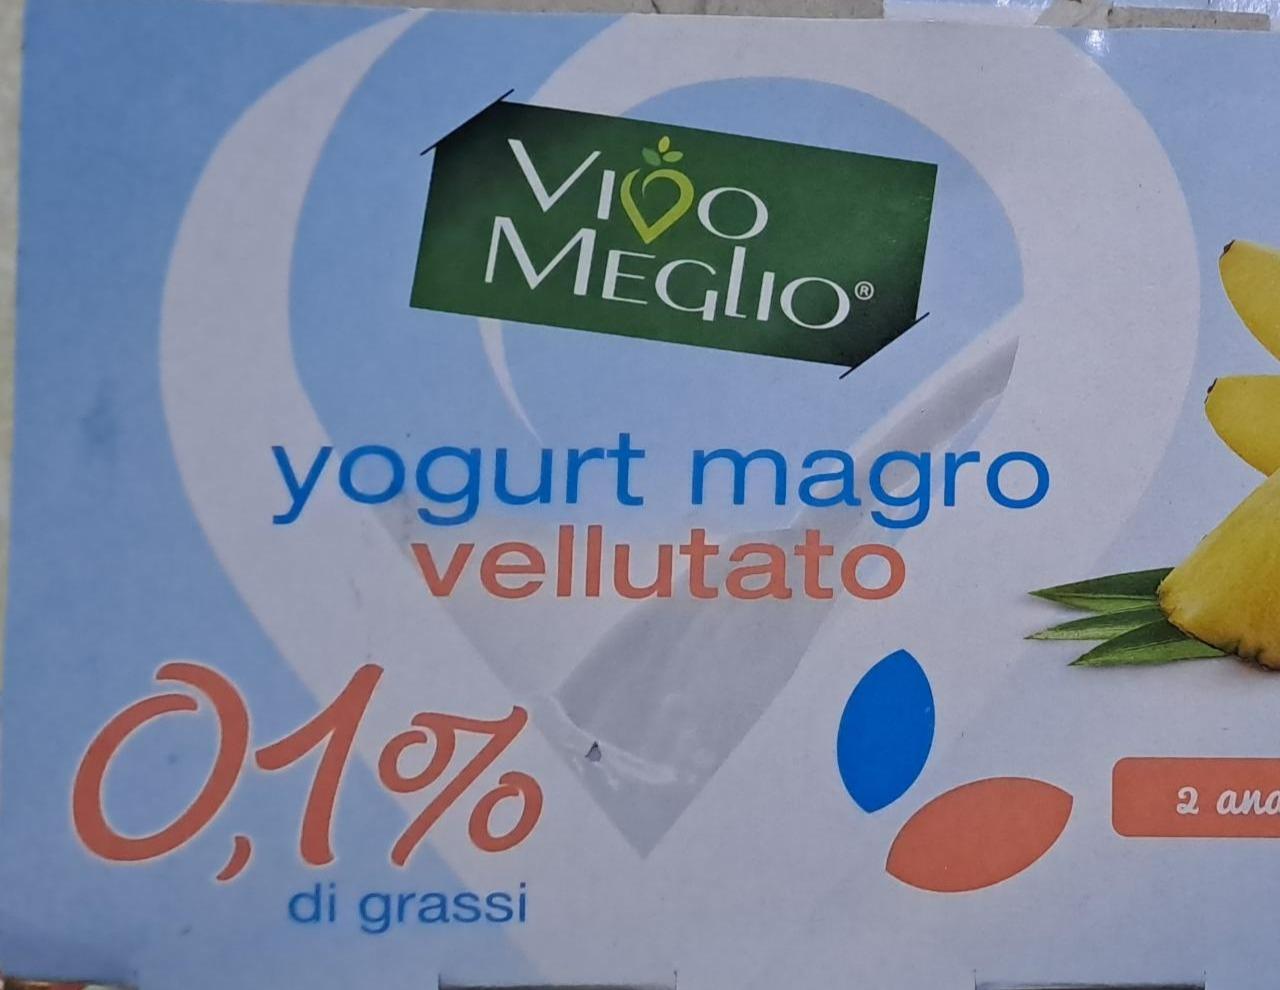 Fotografie - Yogurt magro vellutato Vivo Meglio